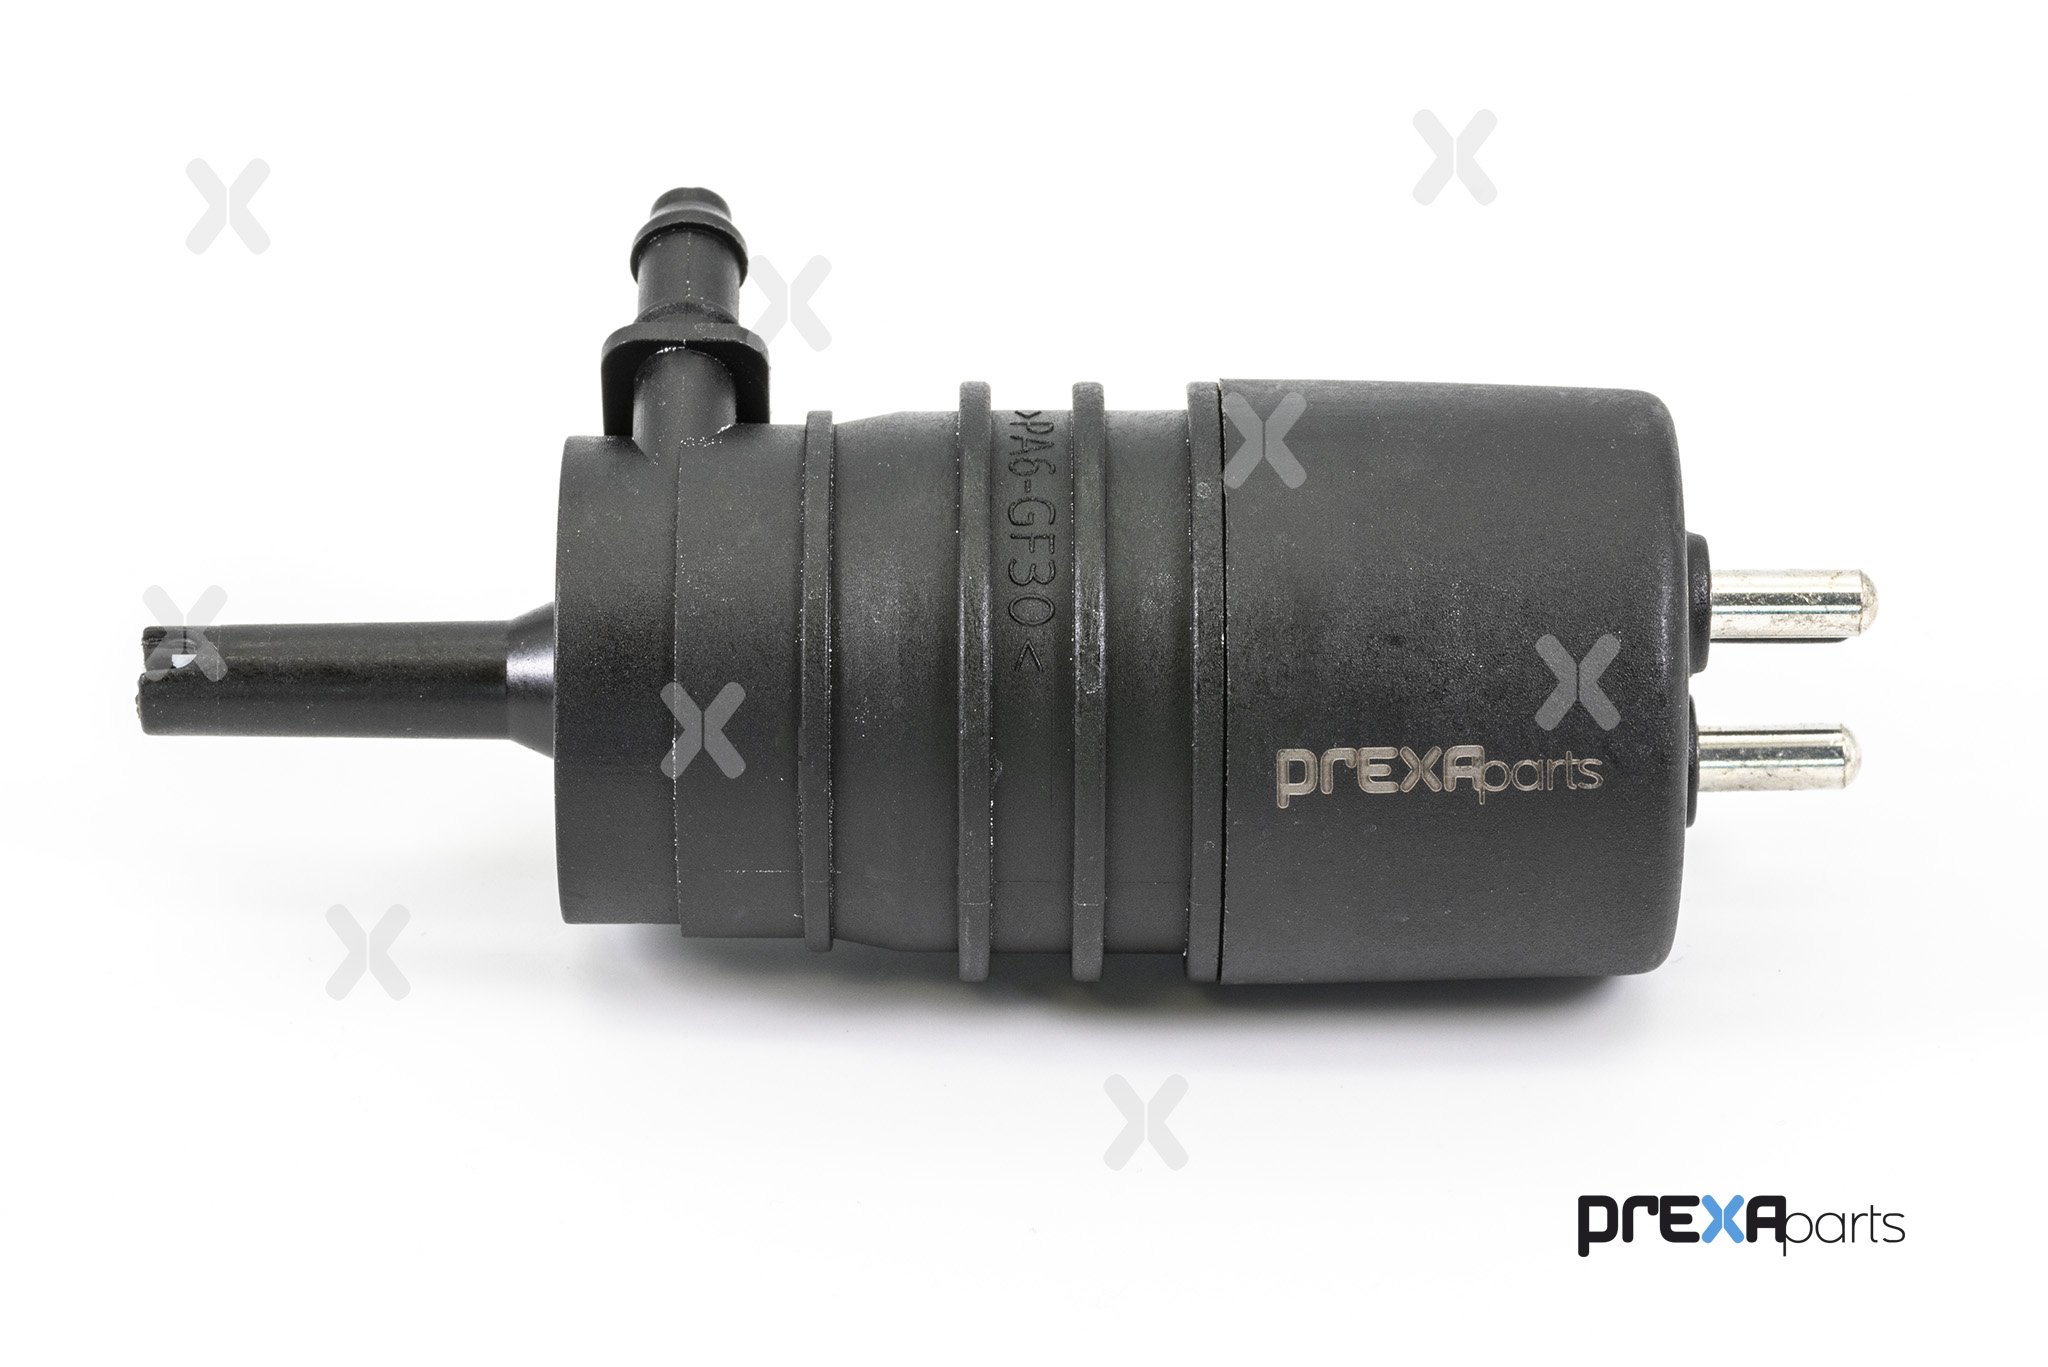 PREXAparts P308001